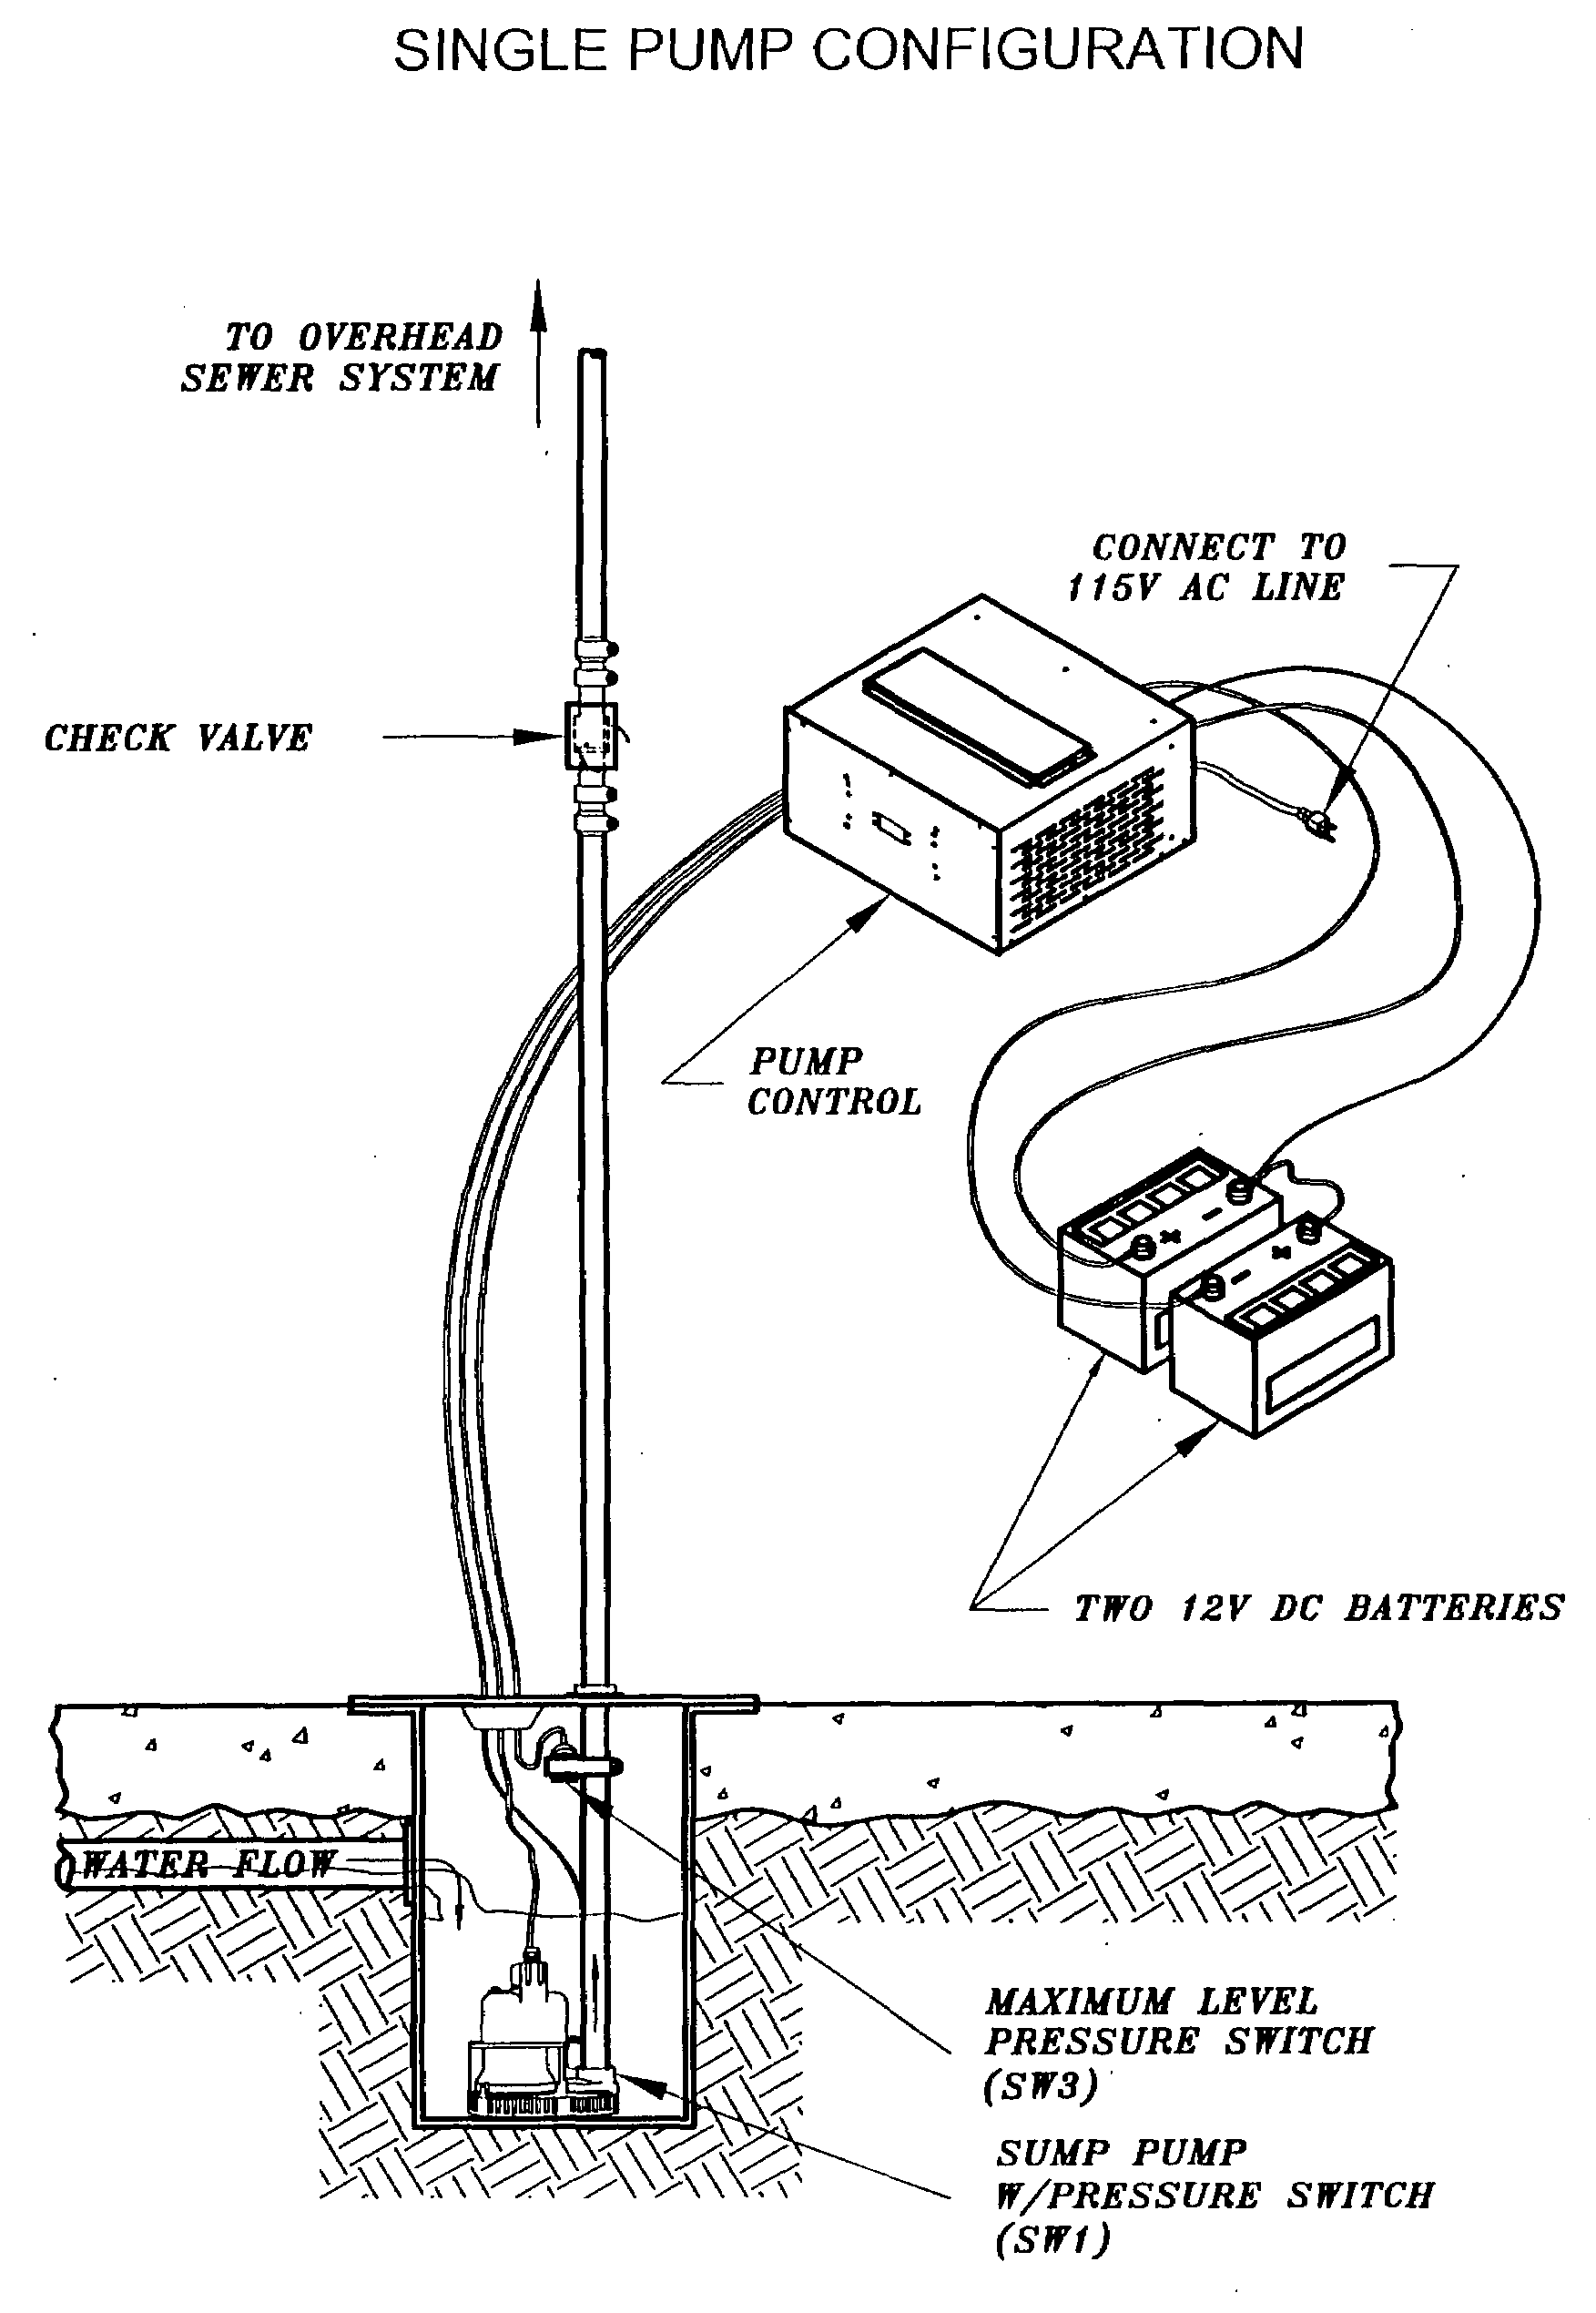 Sump pump control system